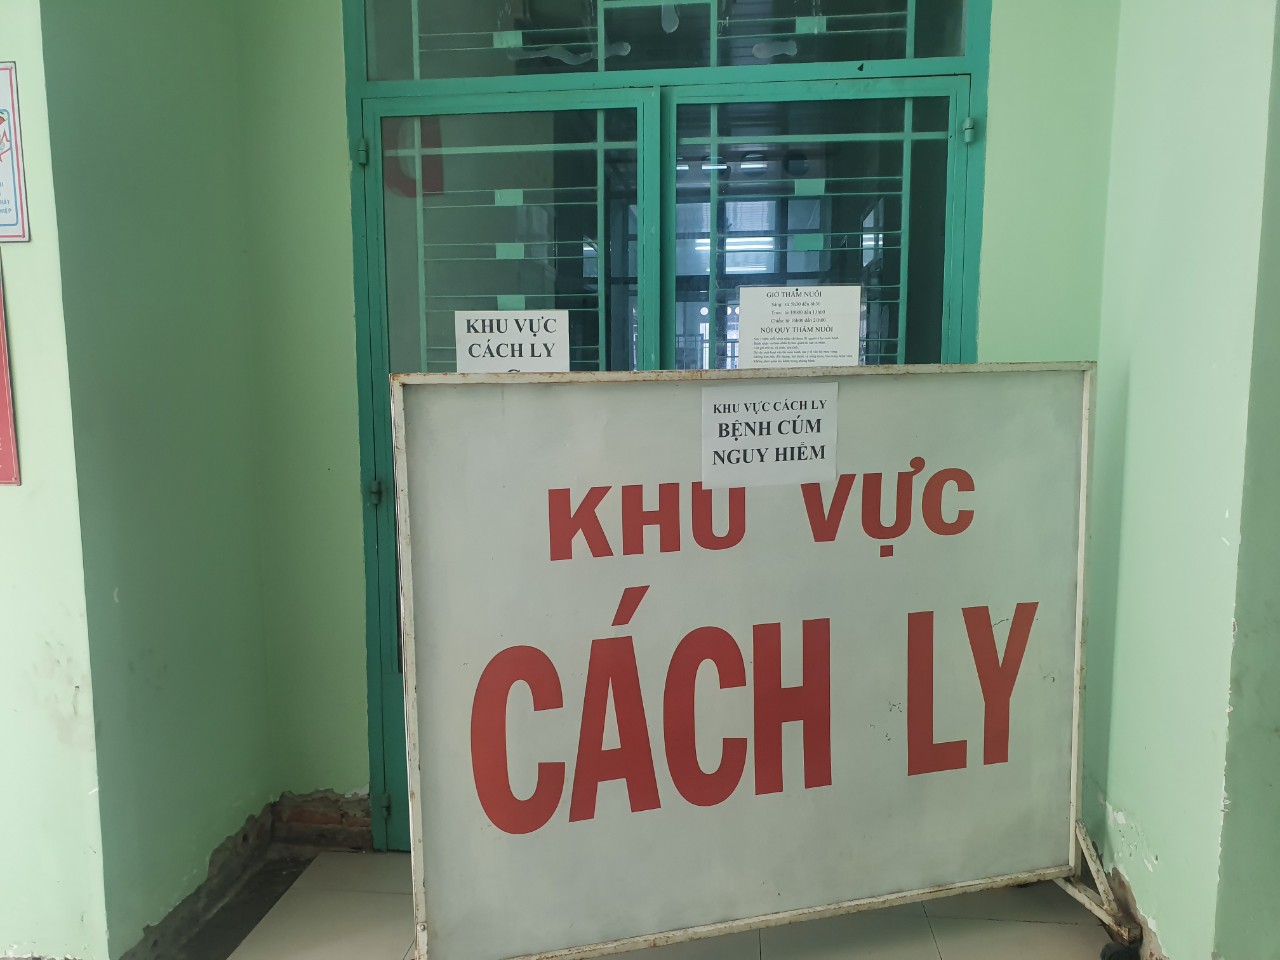 Khu vực cách ly của Bệnh viện Bệnh nhiệt đới tỉnh Khánh Hòa